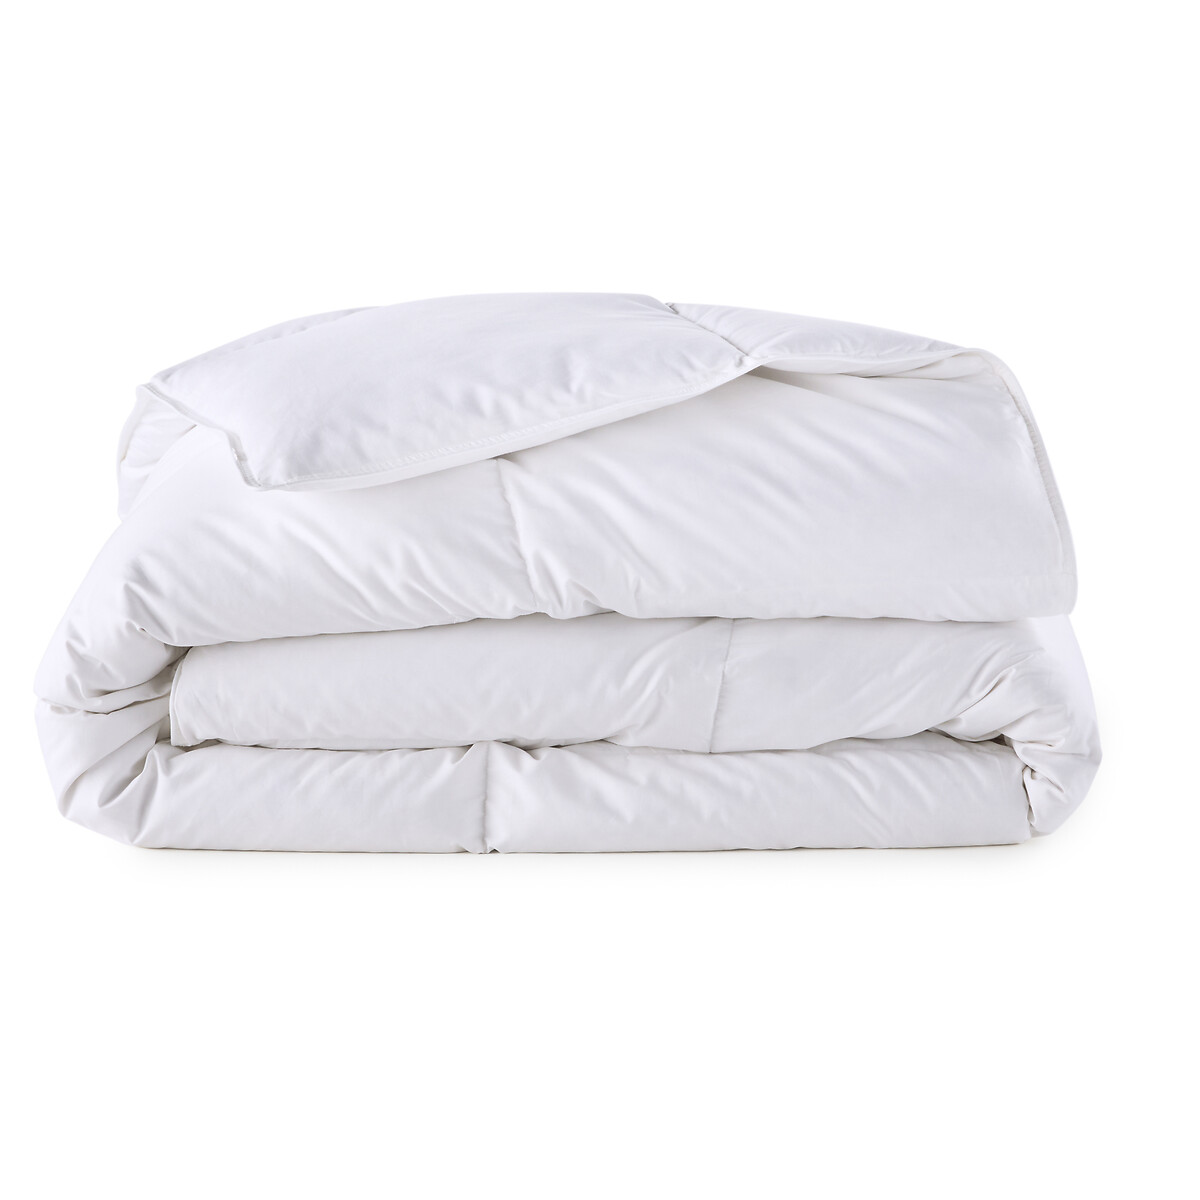 Одеяло LaRedoute TEMPEREE 370 гм2 - 50 гусиного пуха 240 x 220 см белый, размер 240 x 220 см - фото 2